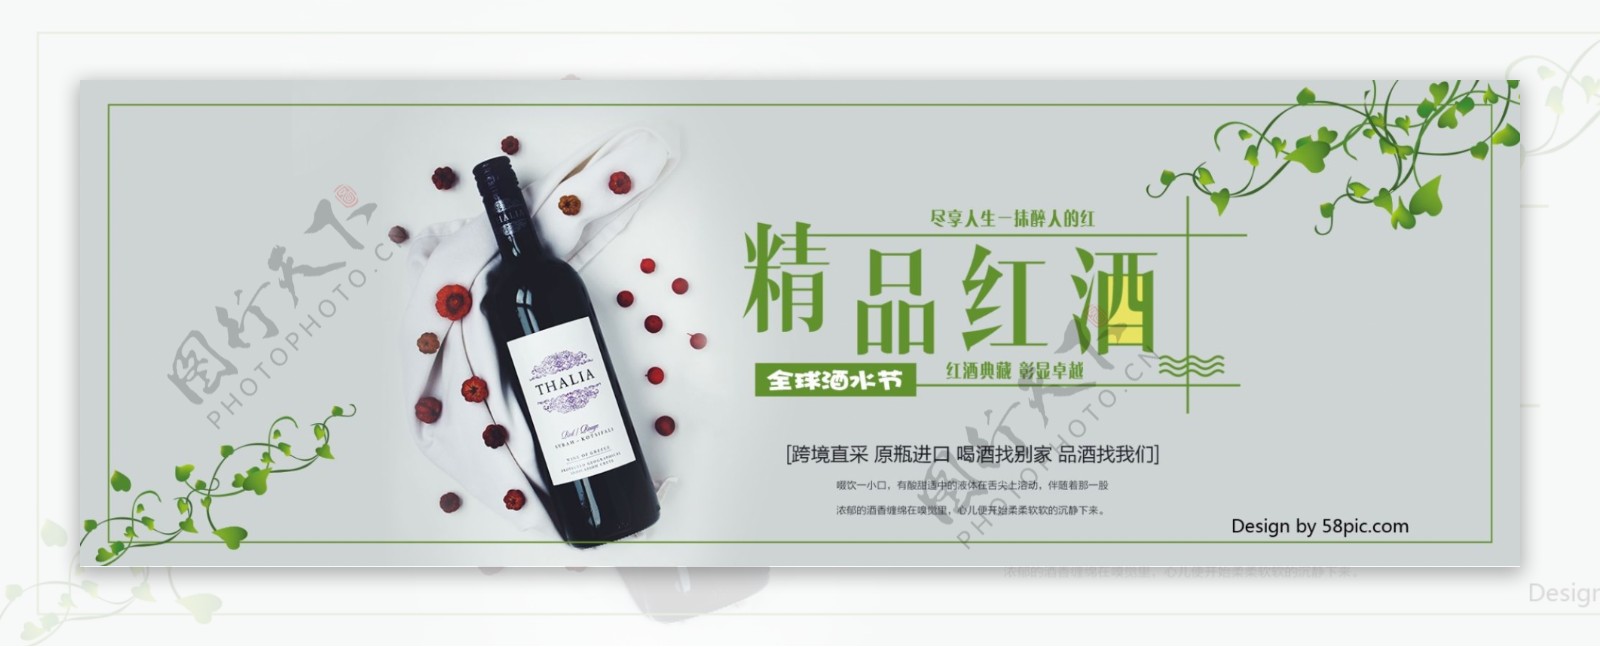 电商淘宝天猫全球酒水节红酒葡萄酒海报banner酒水海报